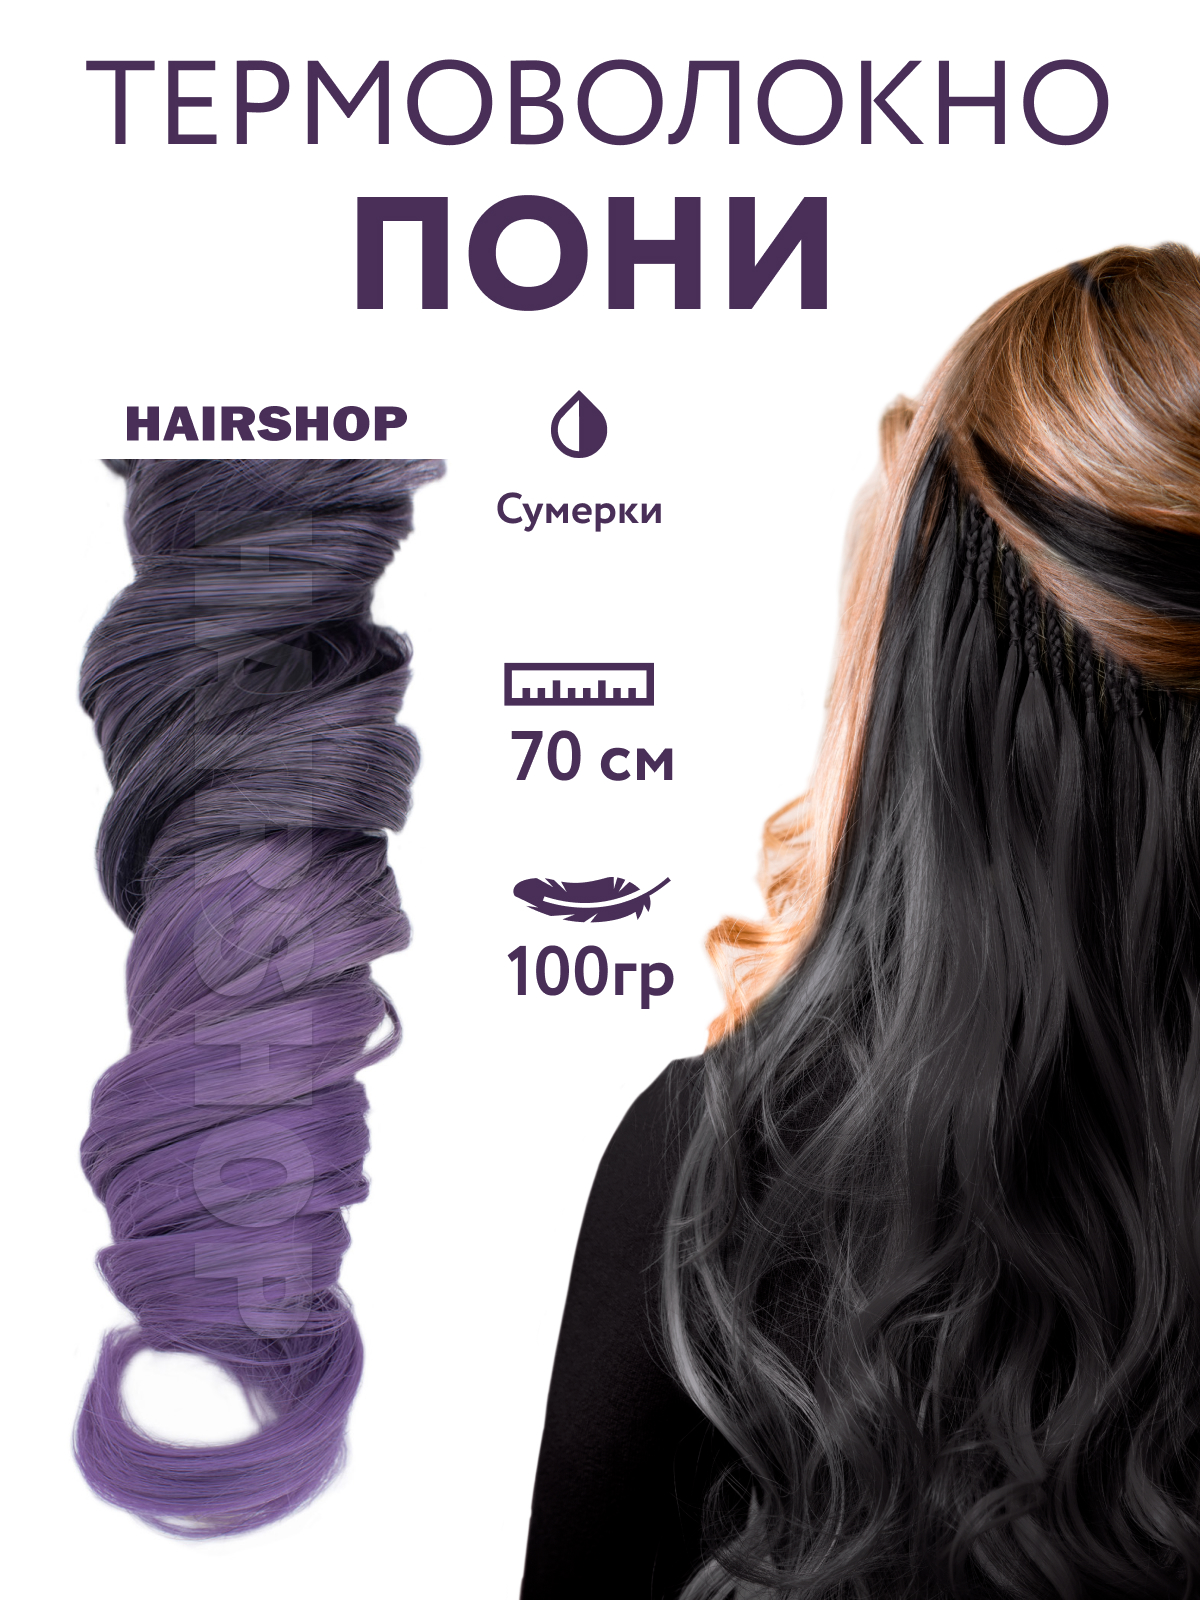 Канекалон Hairshop Пони HairUp для точечного афронаращивания Сумерки 1,4м